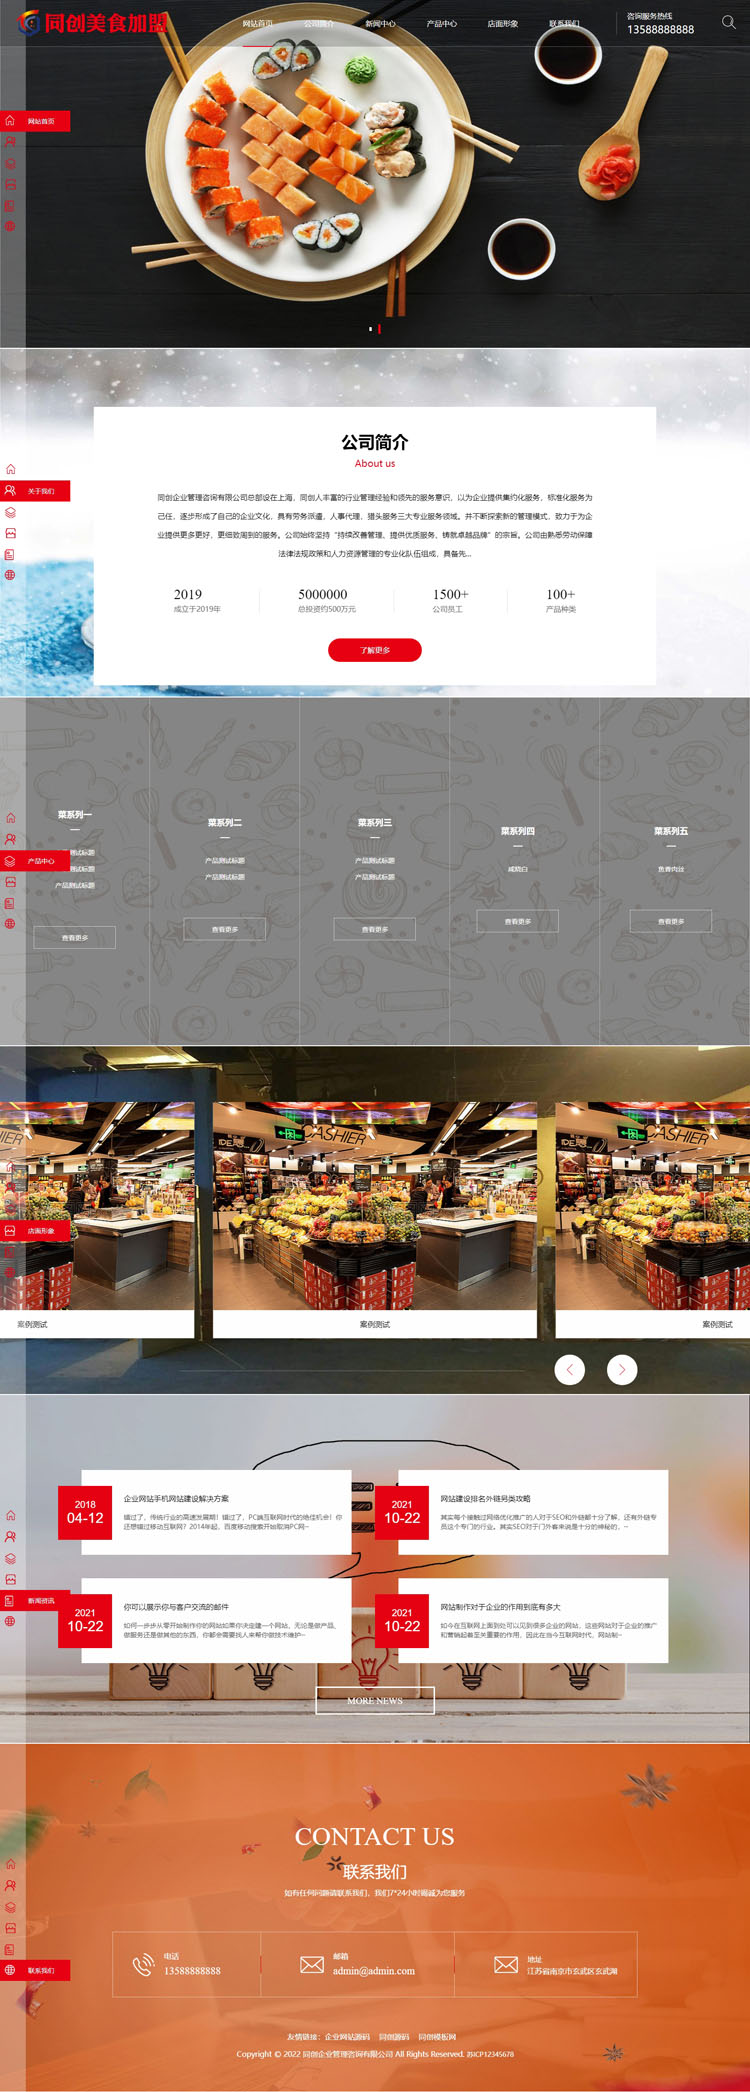 高端餐饮美食加盟网站模板程序-ZP003-2